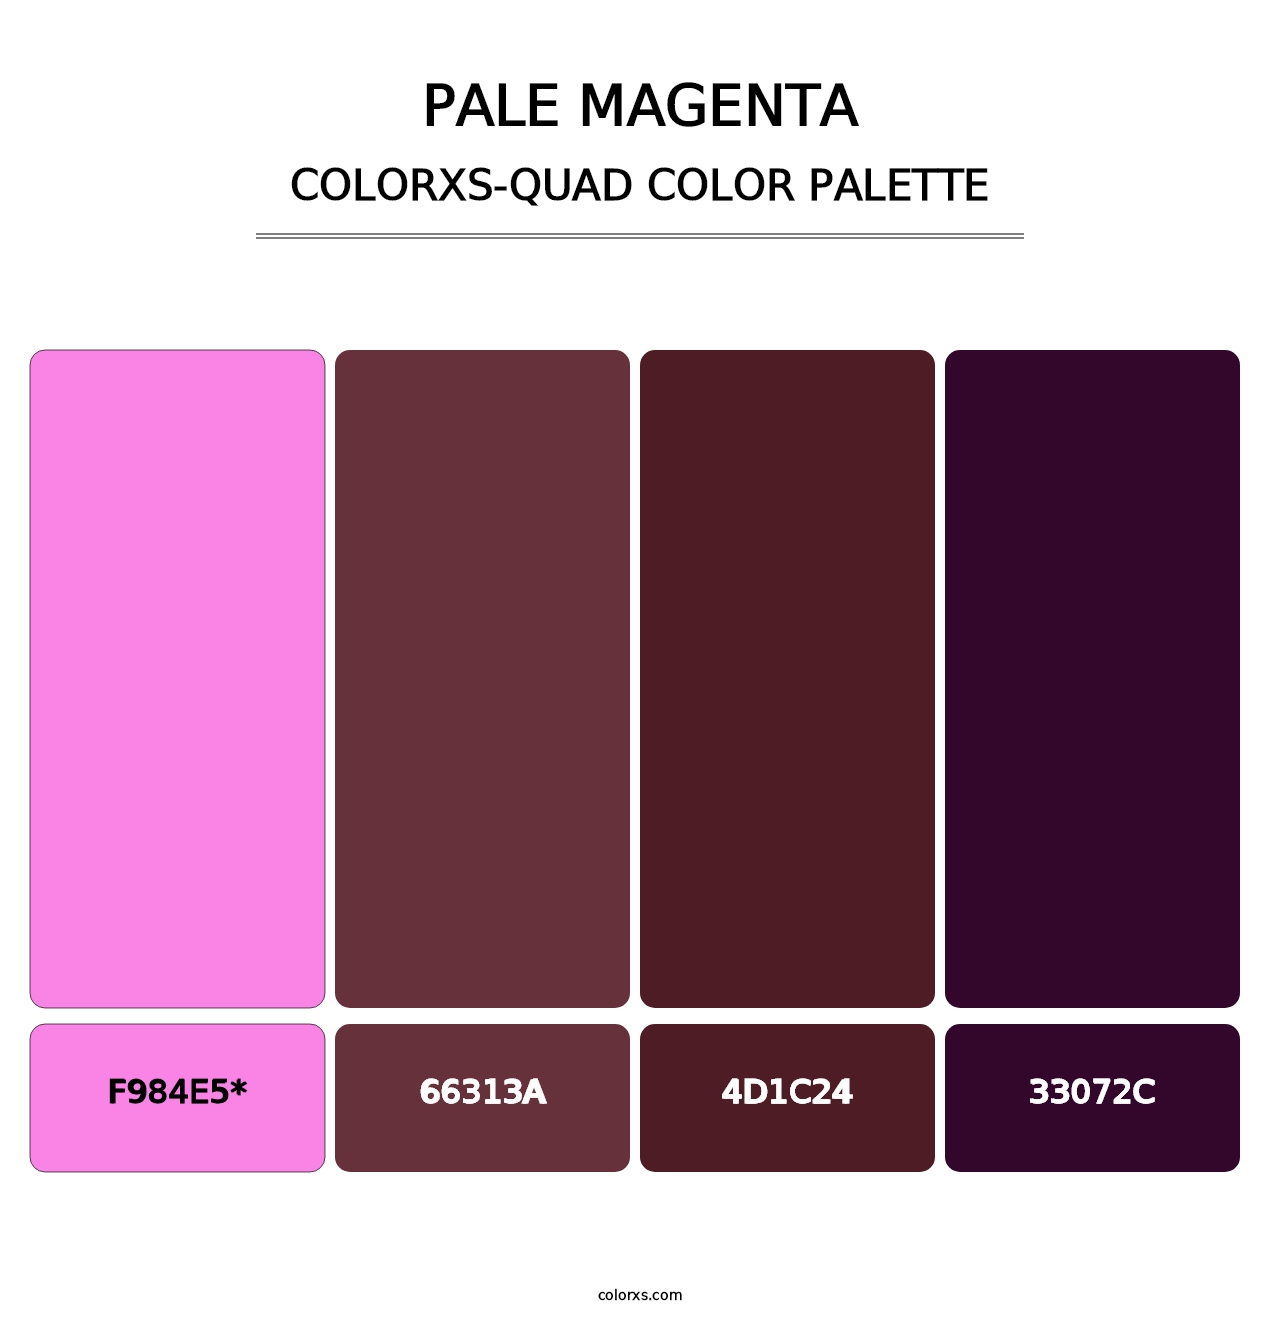 Pale Magenta - Colorxs Quad Palette